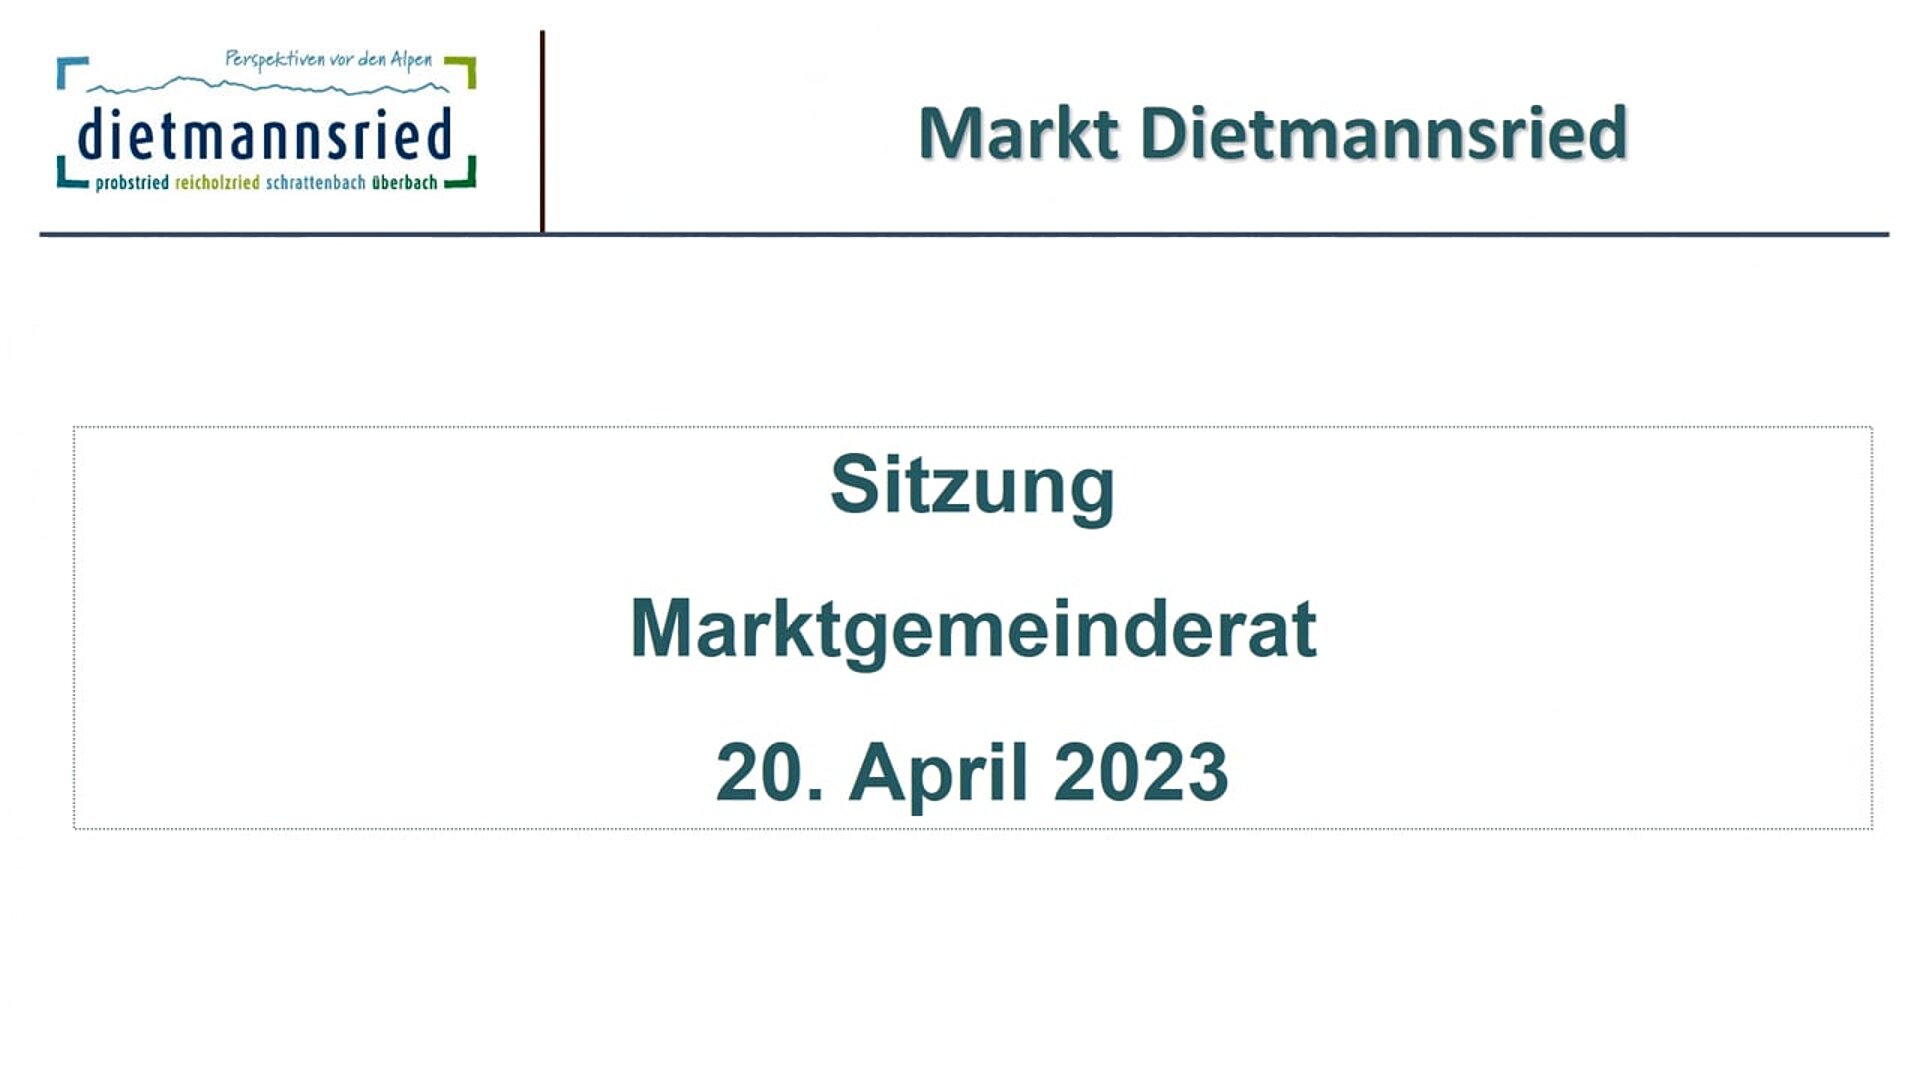 Sitzung Marktgemeinderat 20. April 2023